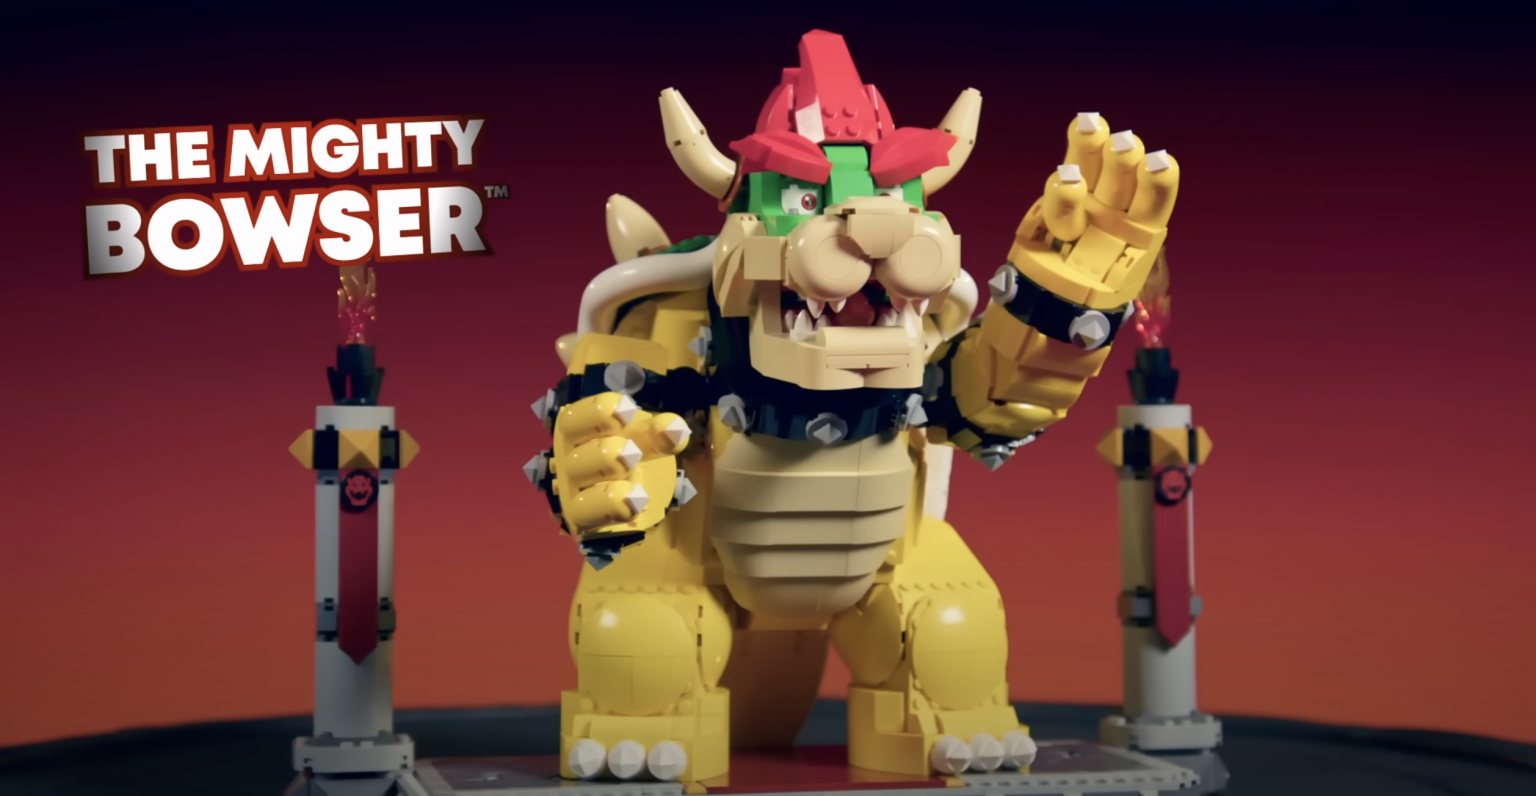 Lego anunciou um enorme conjunto Mighty Bowser com mais de 2000 peças